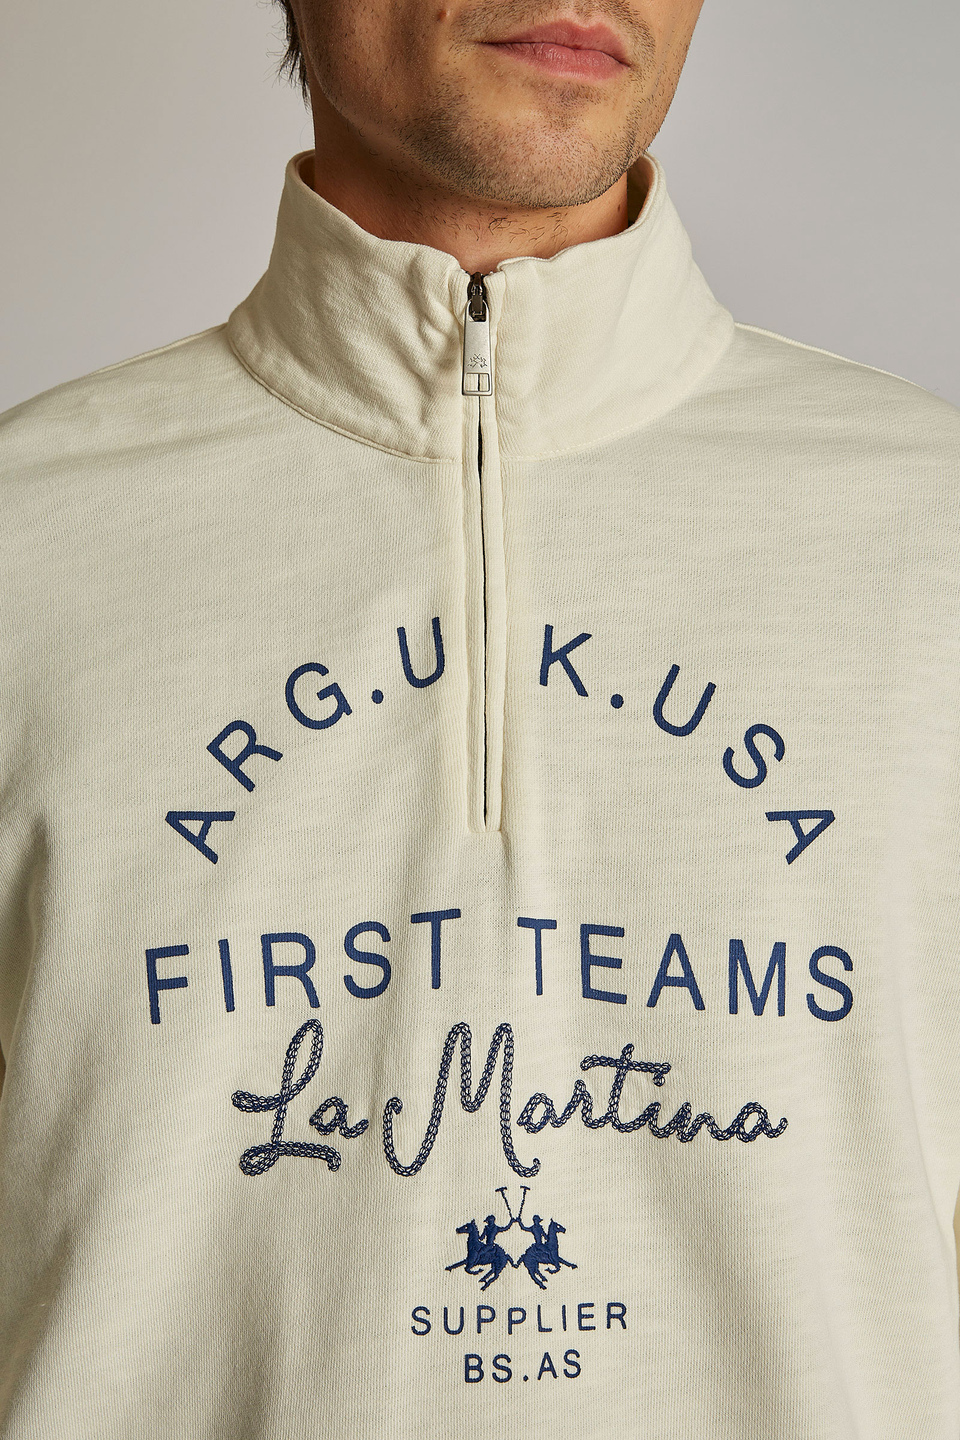 Men's oversized zip-neck sweatshirt in 100% cotton fabric | La Martina - Official Online Shop